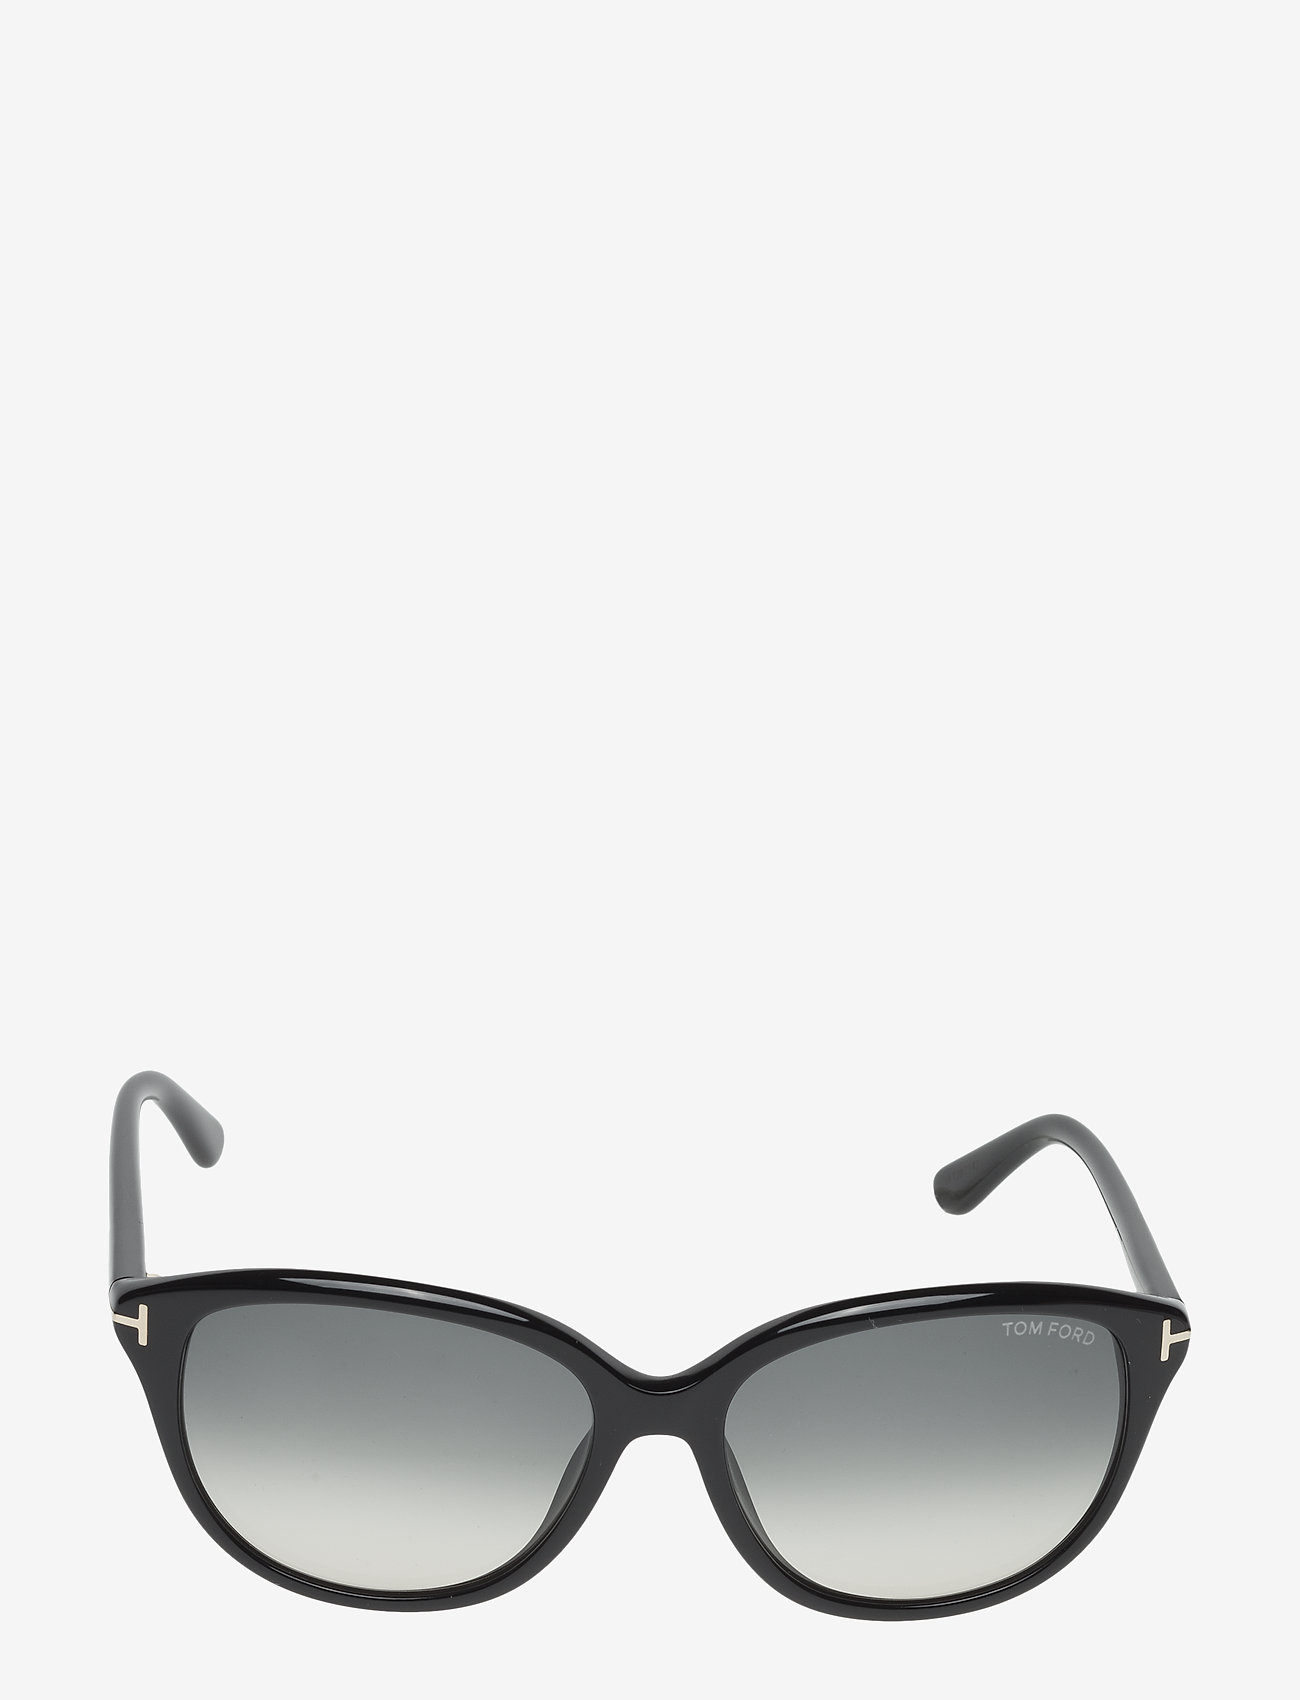 Tom Ford Sunglasses - KARMEN - d-laga - 01b - shiny black / gradient smoke - 1